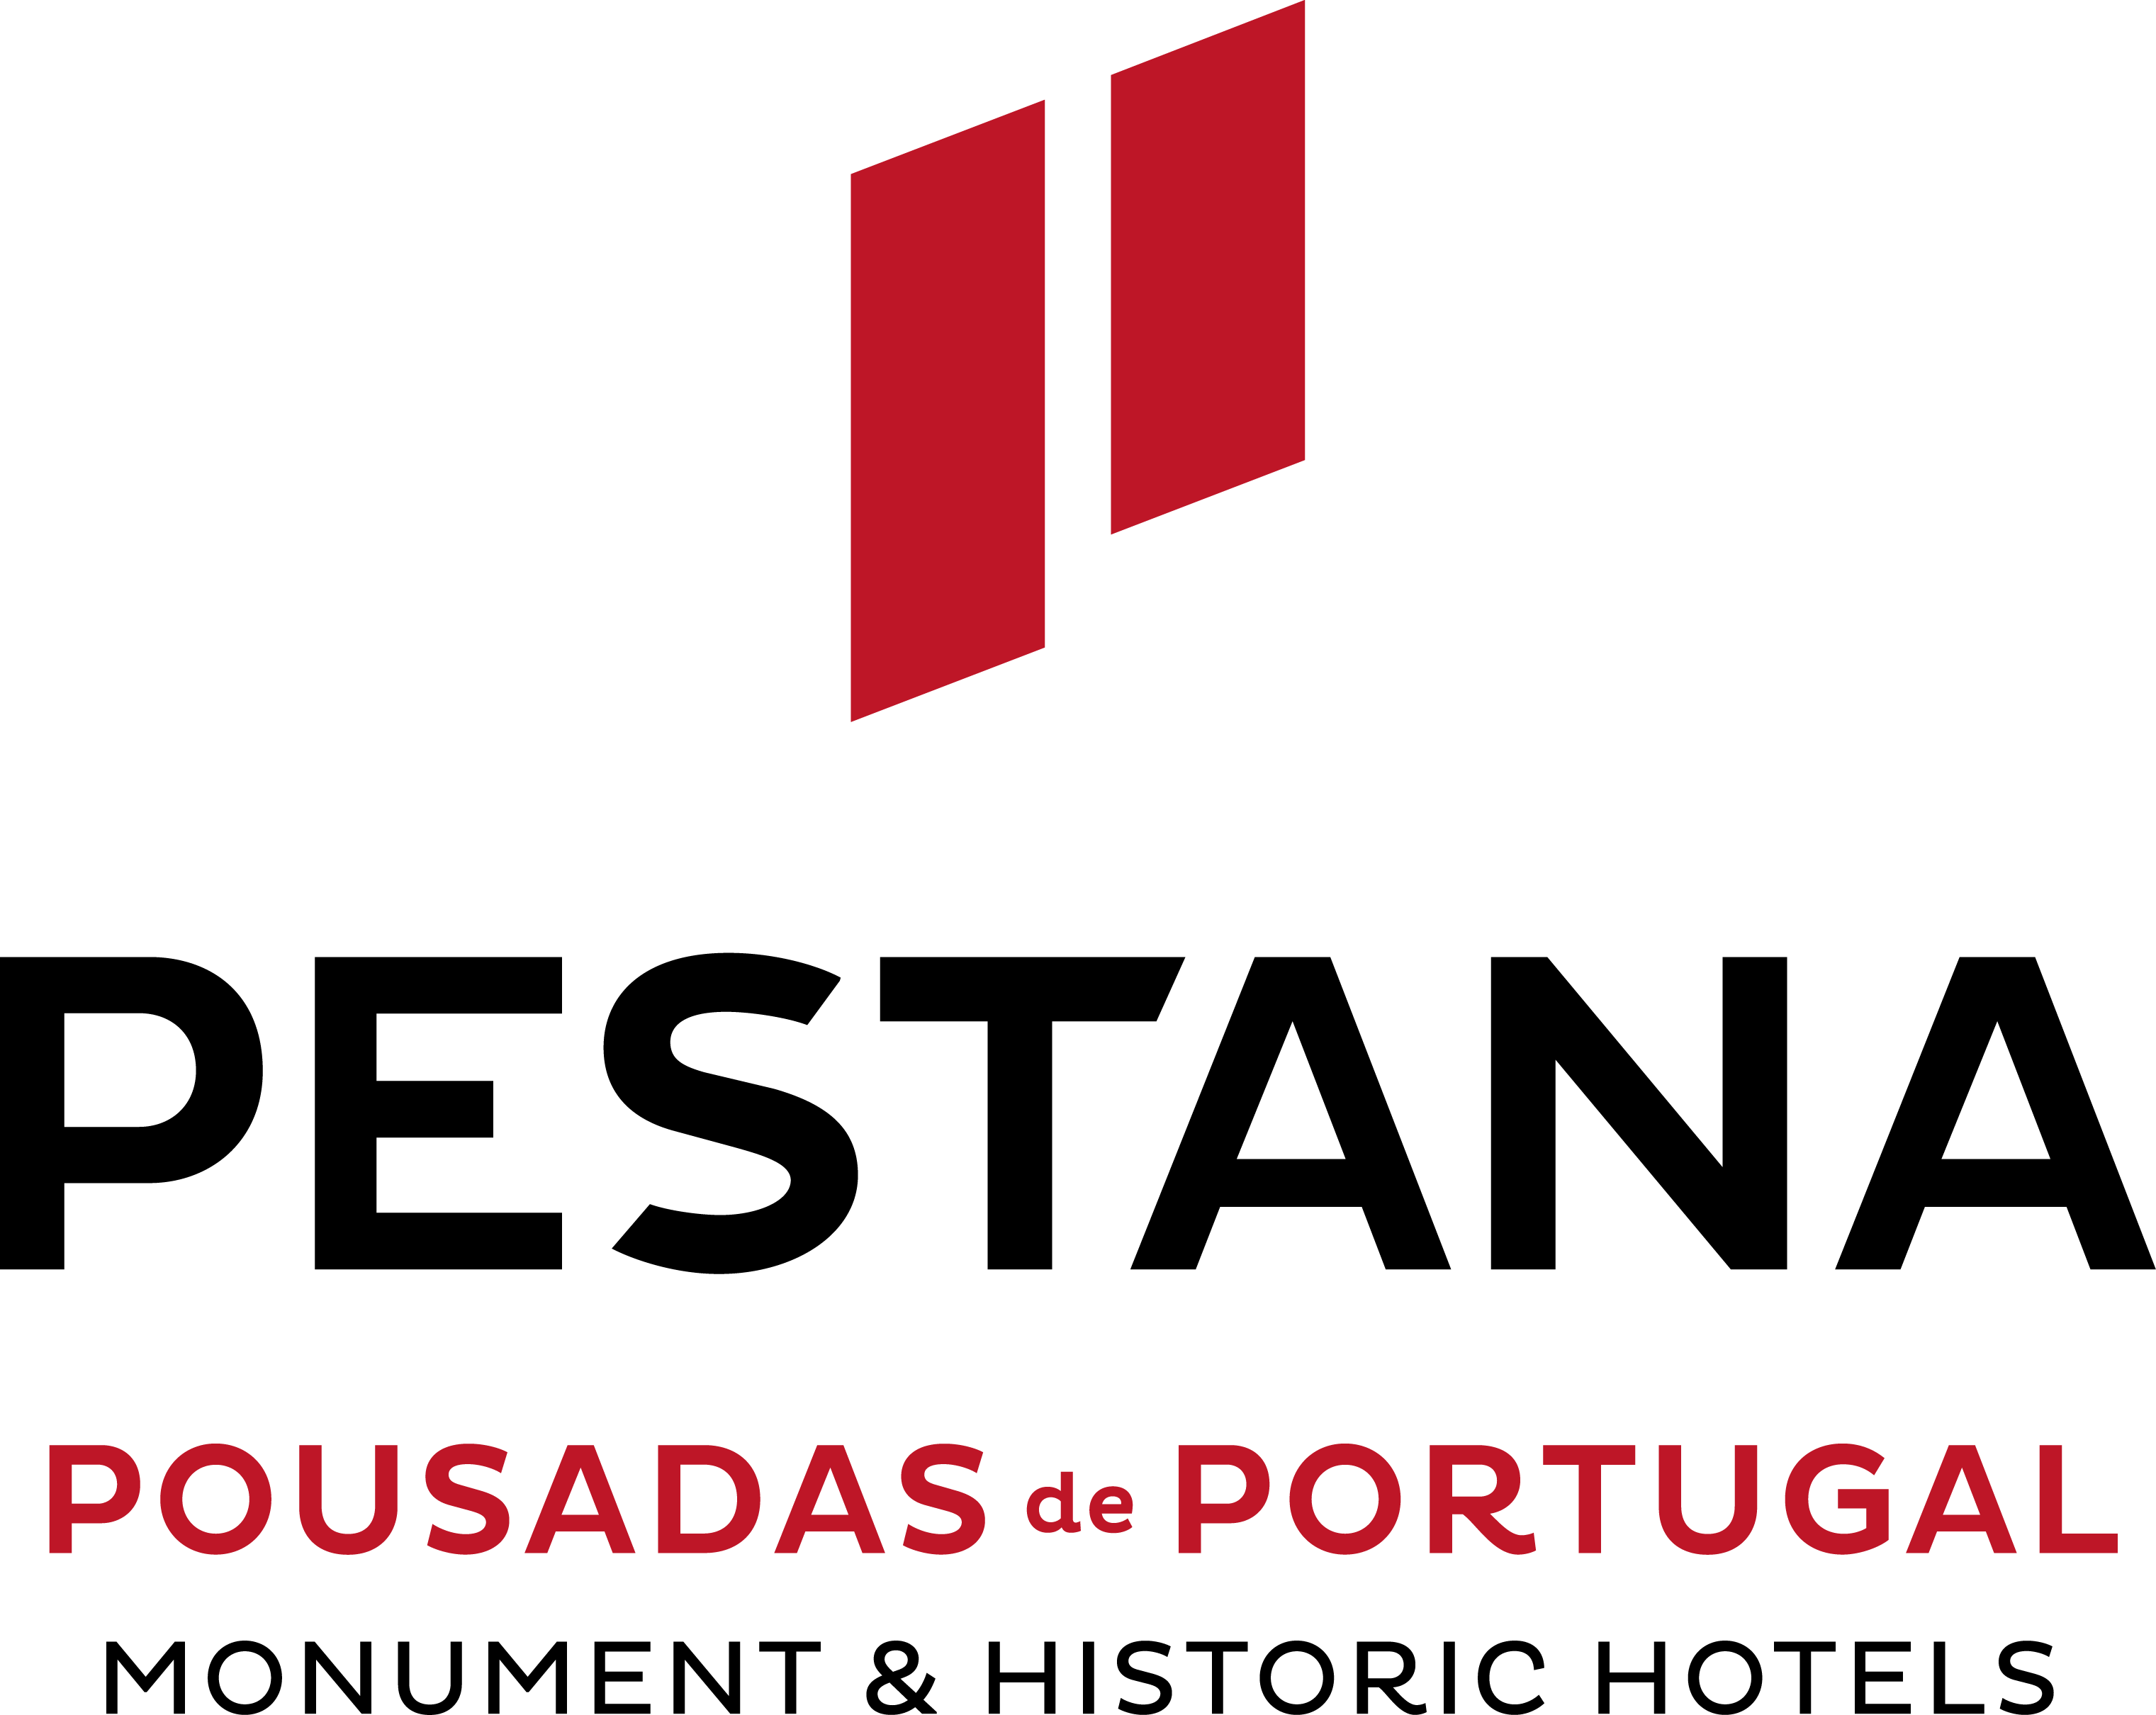 Pestana Pousadas de Portugal logo